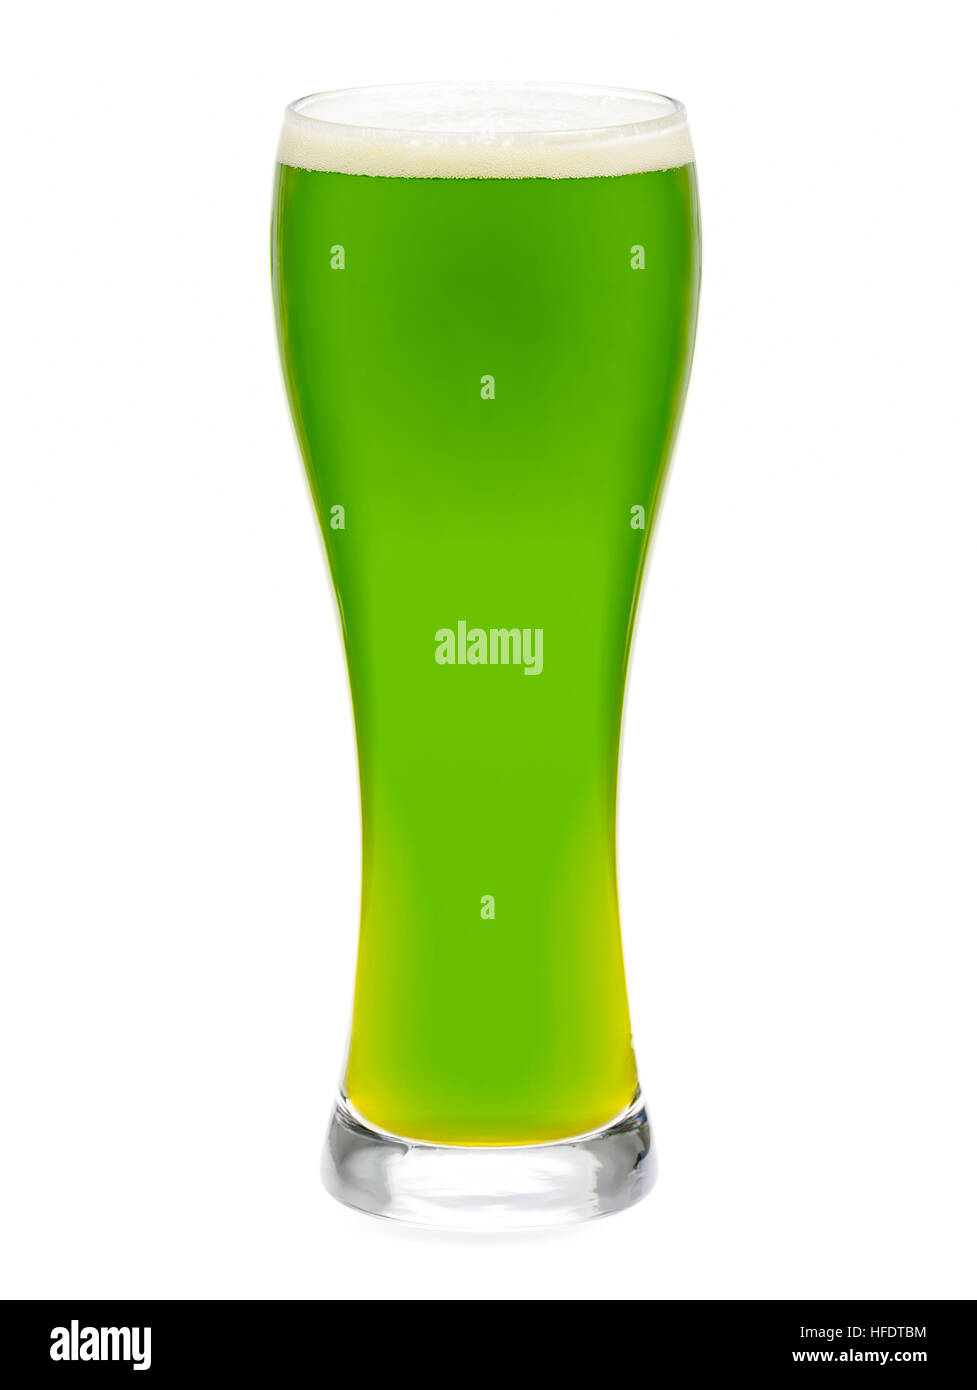 Grand verre de bière verte à selebrate le jour de rue Patrick isolé sur fond blanc Banque D'Images